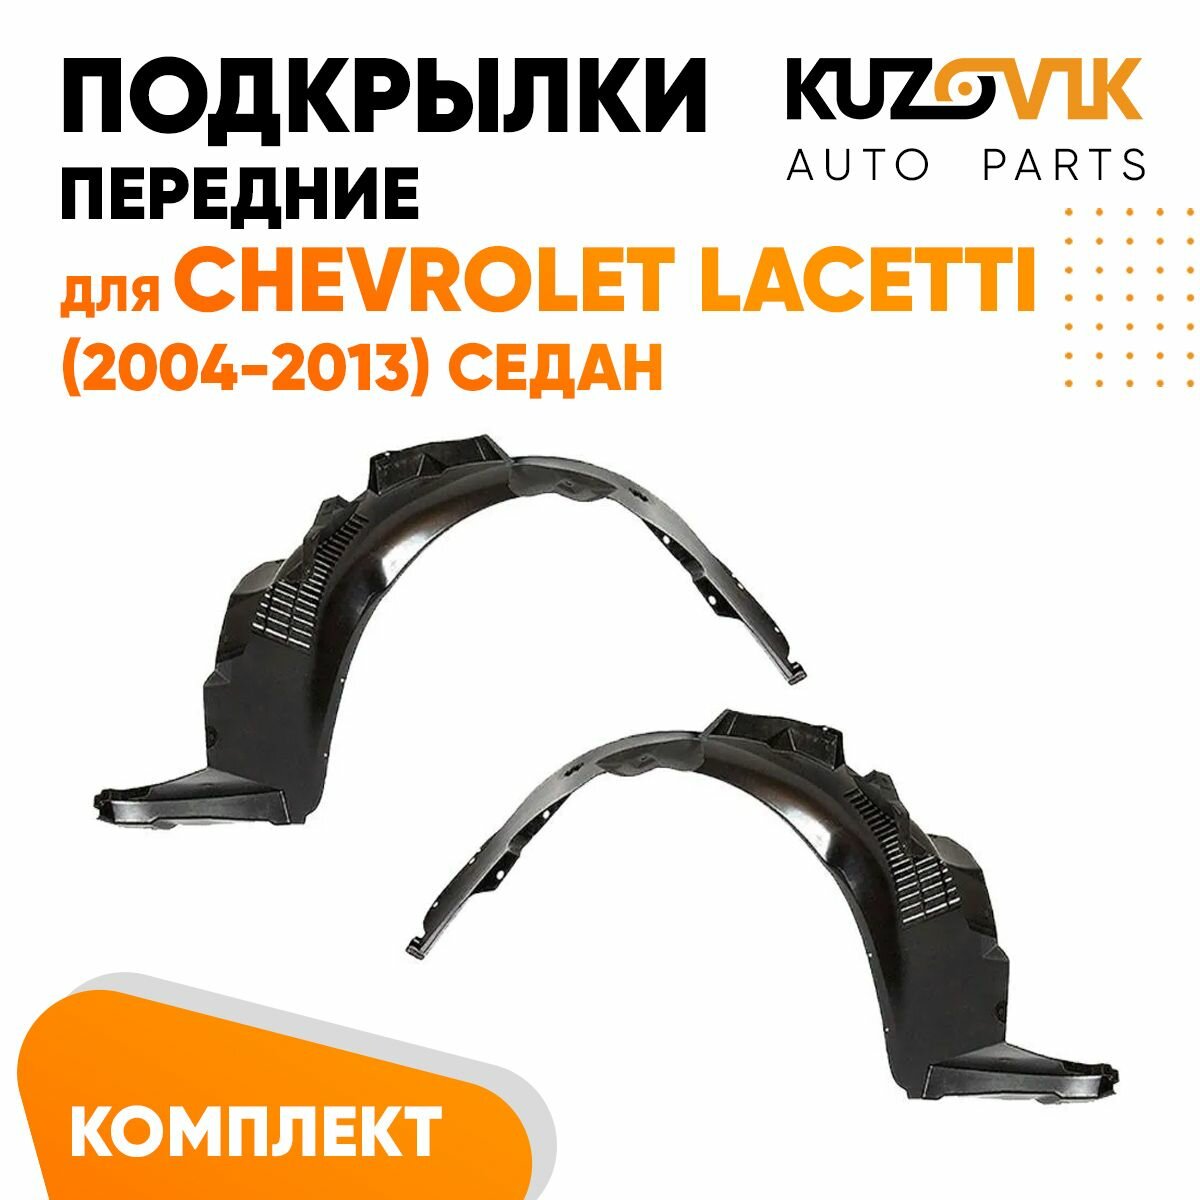 Подкрылки передние для Шевроле Лачетти Chevrolet Lacetti (2004-2013) седан комплект левый + правый 2 штуки, локер, защита крыла